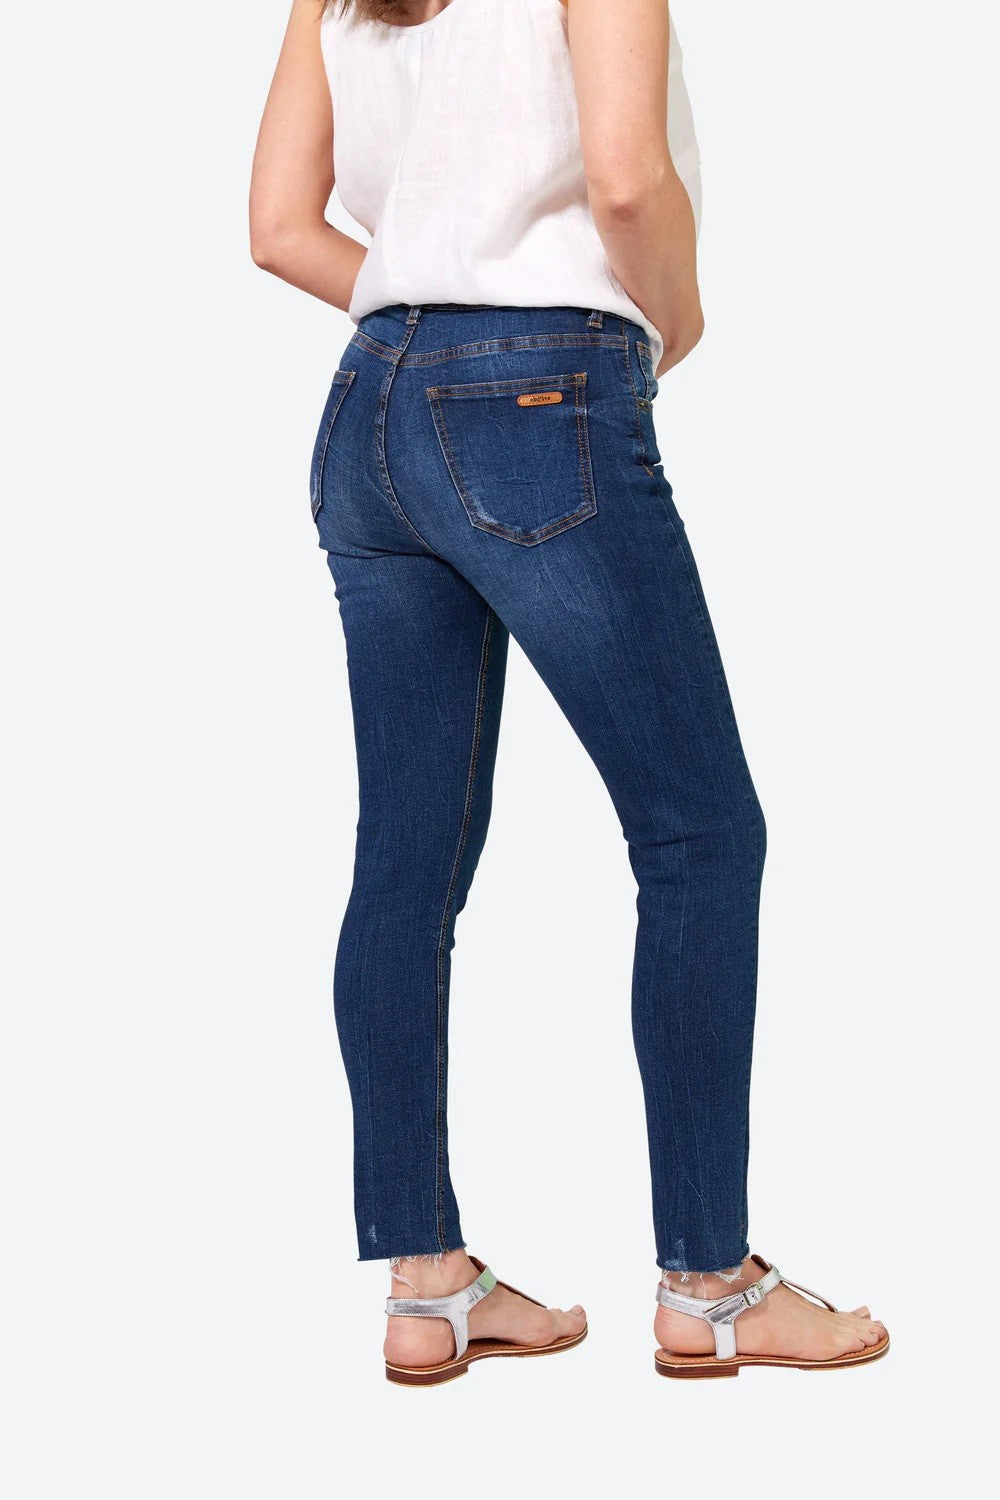 Junko Denim Jeans [sz:xl Clr:denim]